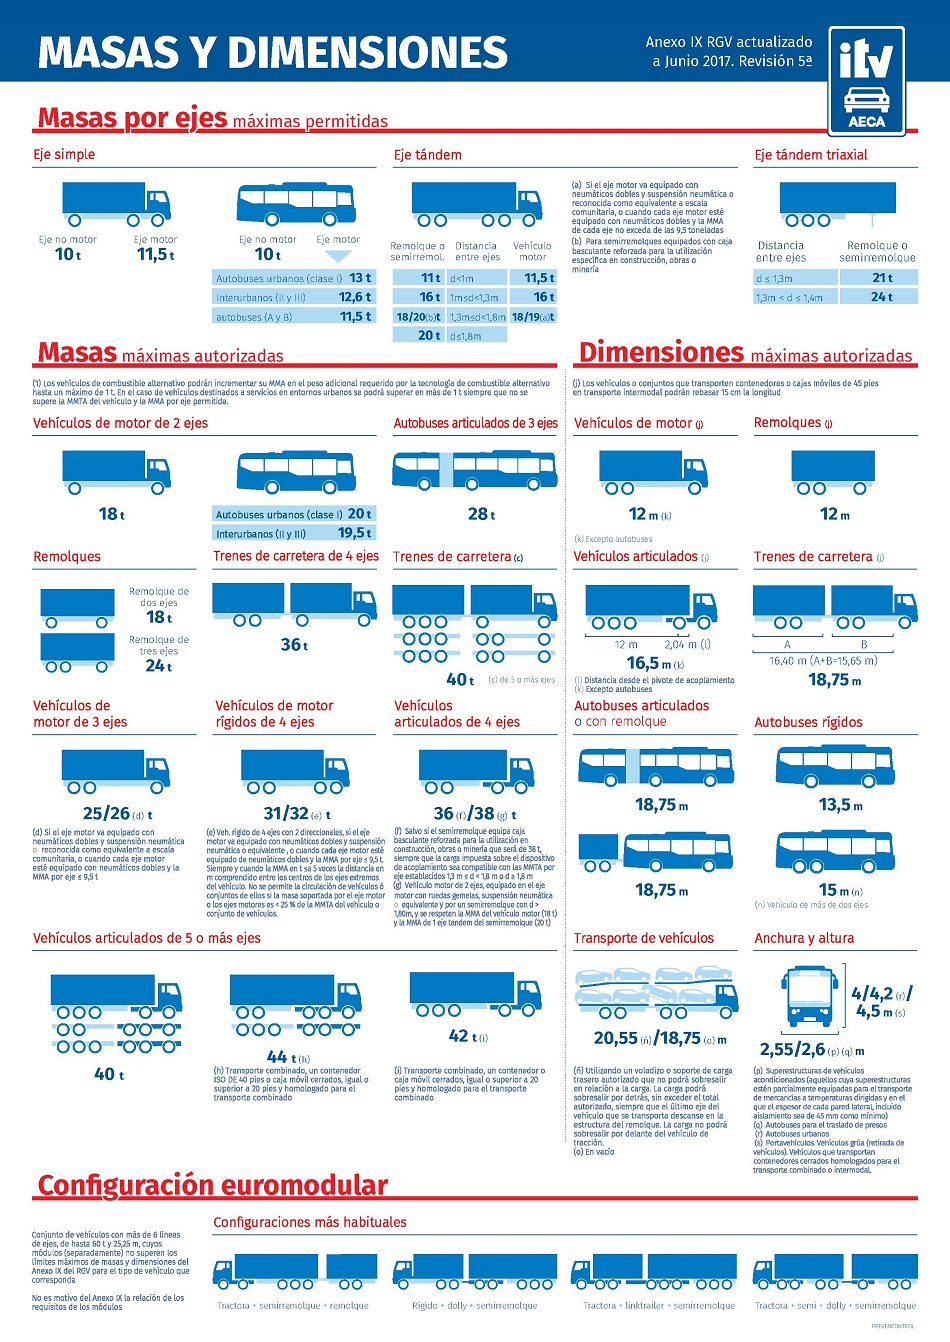 Dimensiones y masas máximas autorizadas para camiones